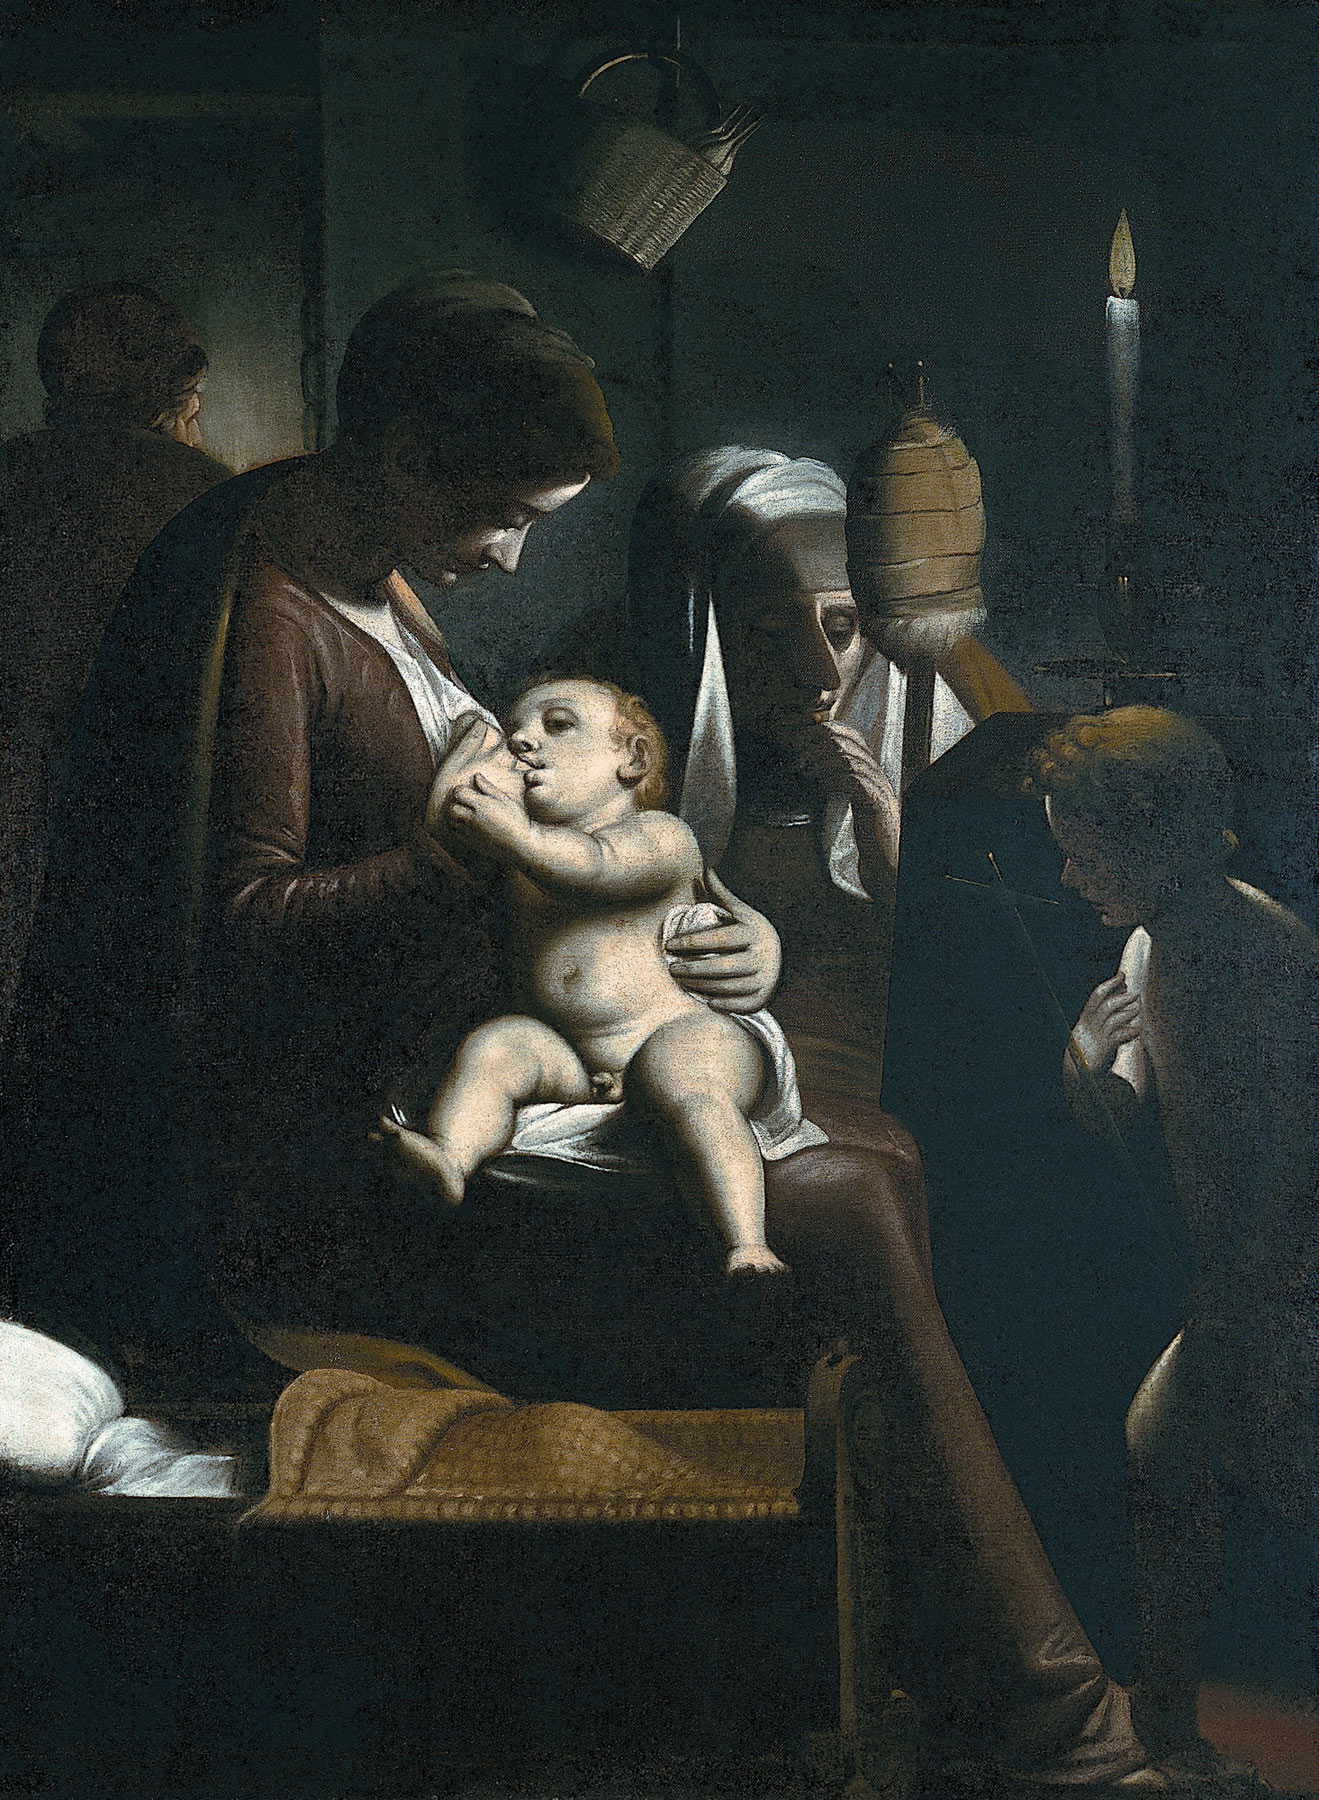 Luca Cambiaso, Madonna della candela (1570-1575; olio su tela, 104 x 109 cm; Genova, Musei di Strada Nuova, Palazzo Bianco, inv. PB 1958)
